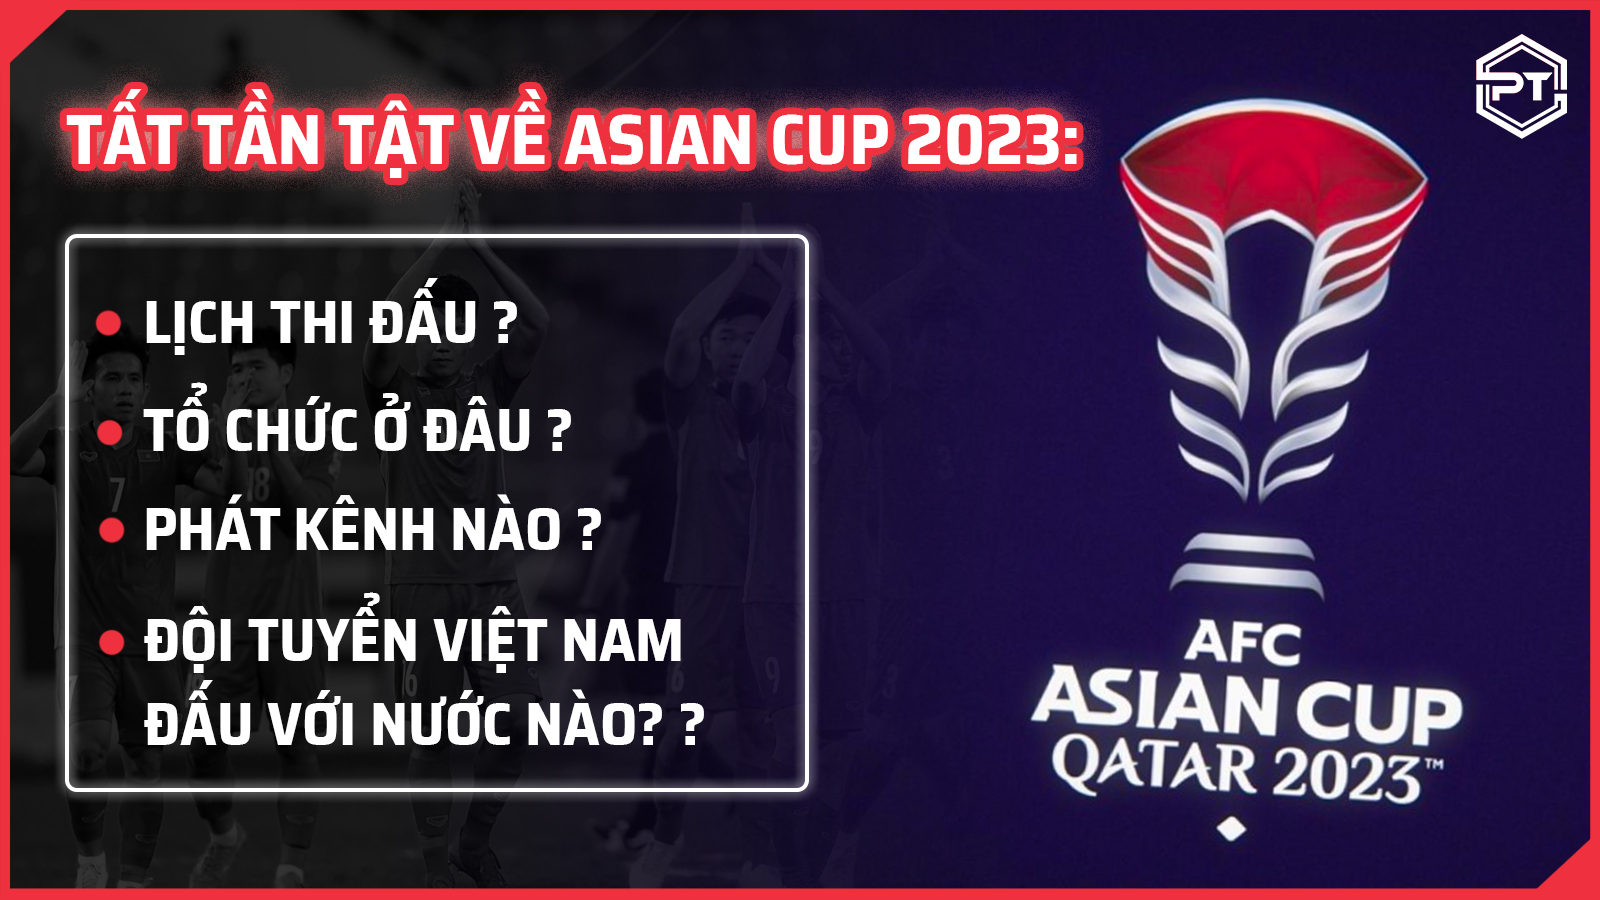 Tất tần tật về Asian Cup 2023